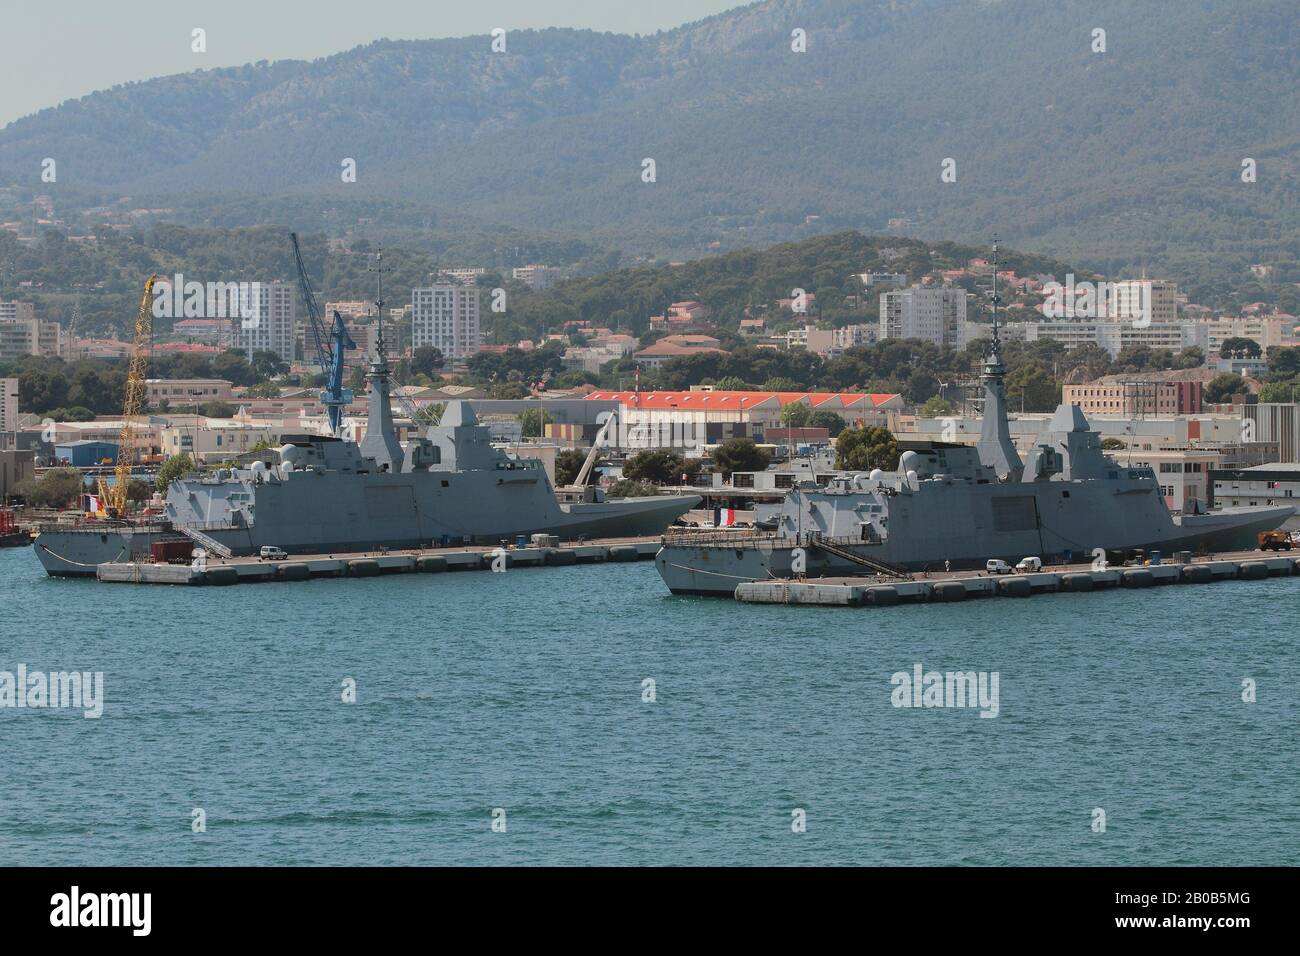 Frégates anti-sous-marins dans le parking du port. Toulon, France Banque D'Images